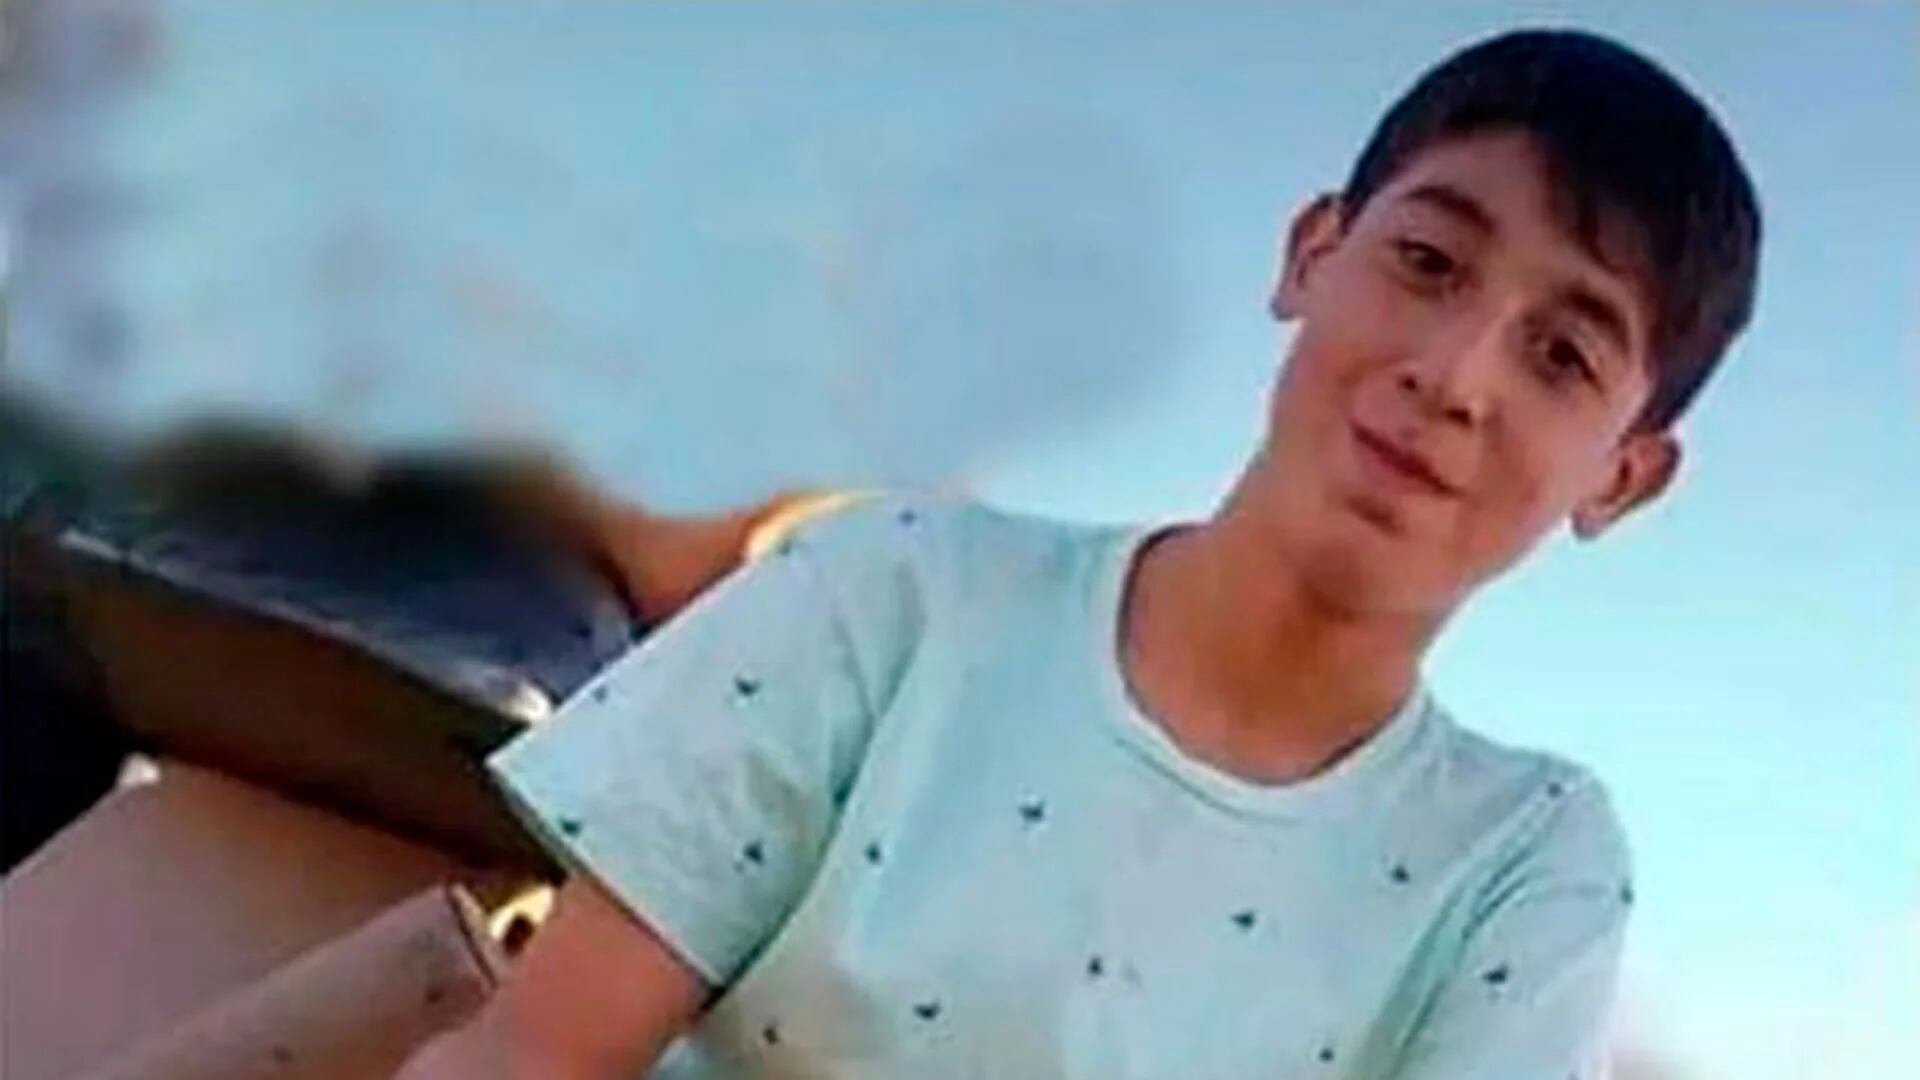 Joaquín Sperani tenía 14 años y, según los resultados de la autopsia, murió tras recibir más de 10 golpes en la cabeza